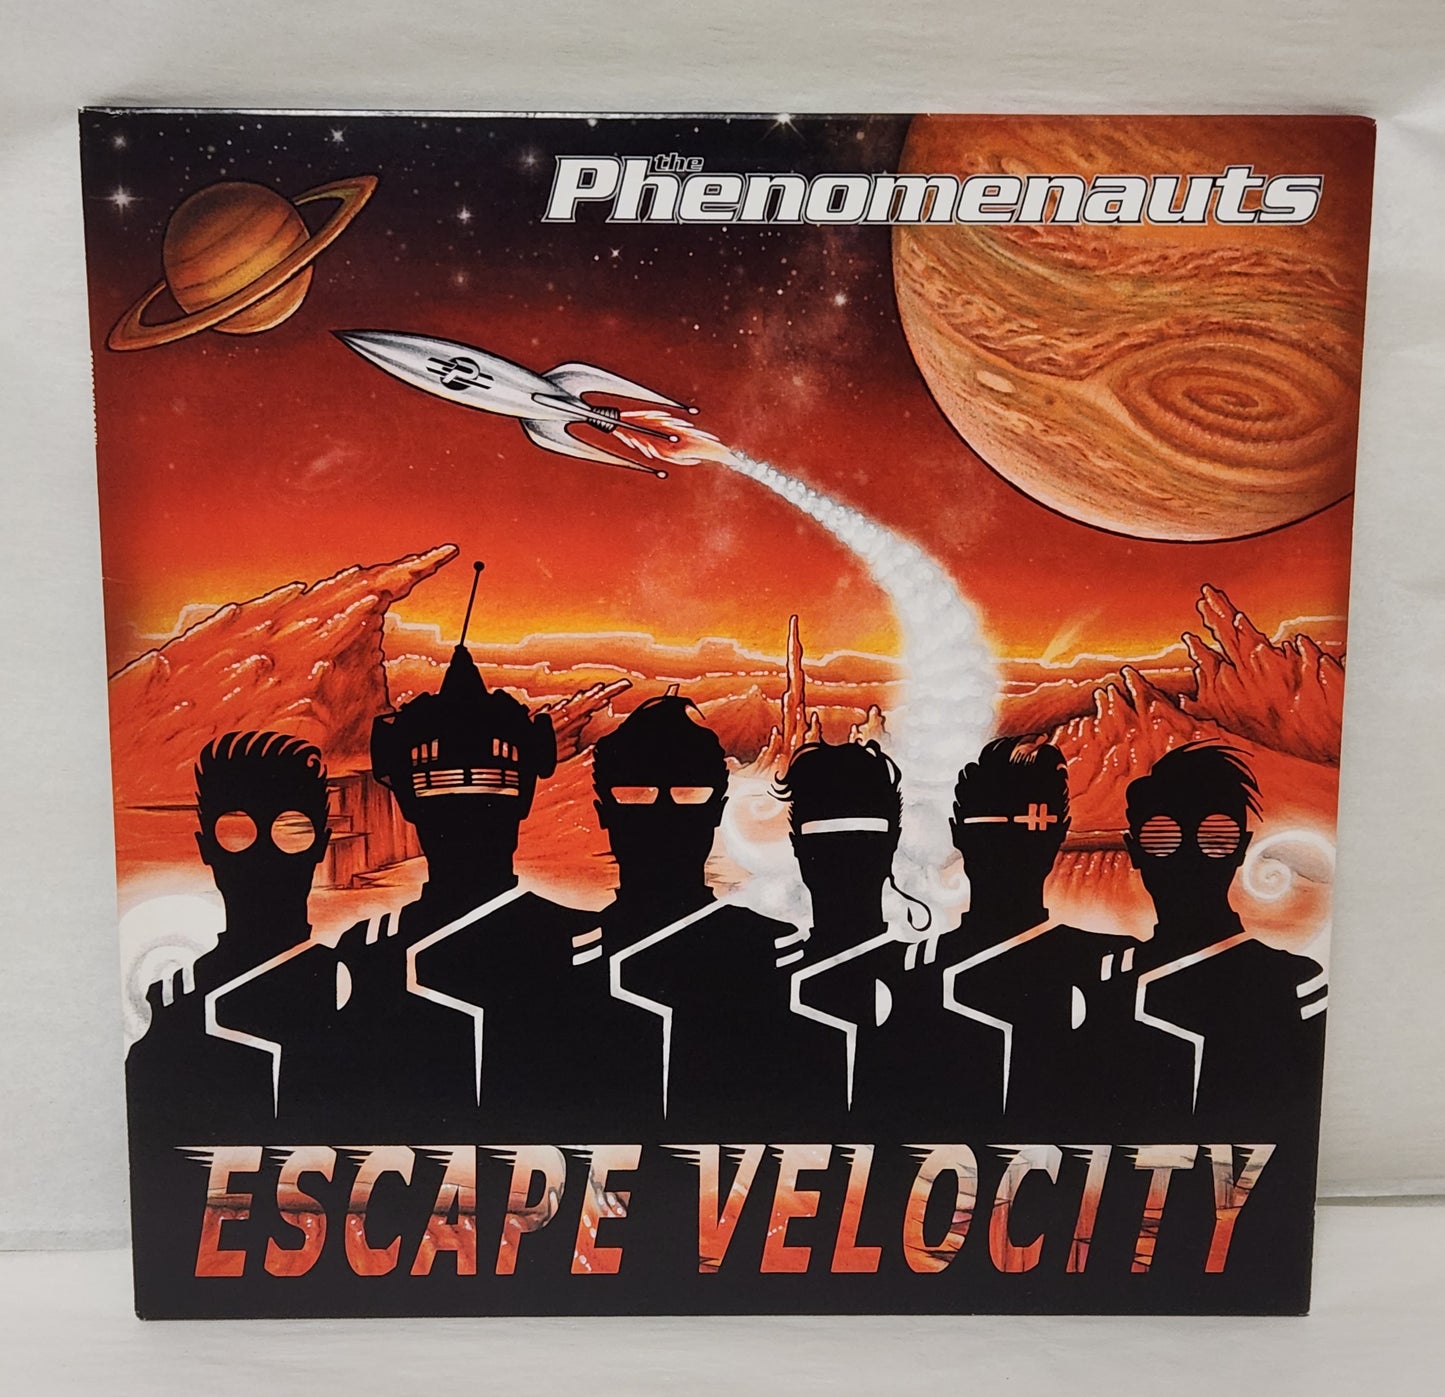 The Phenomenauts "Escape Velocity" 2014 Punk Record Album